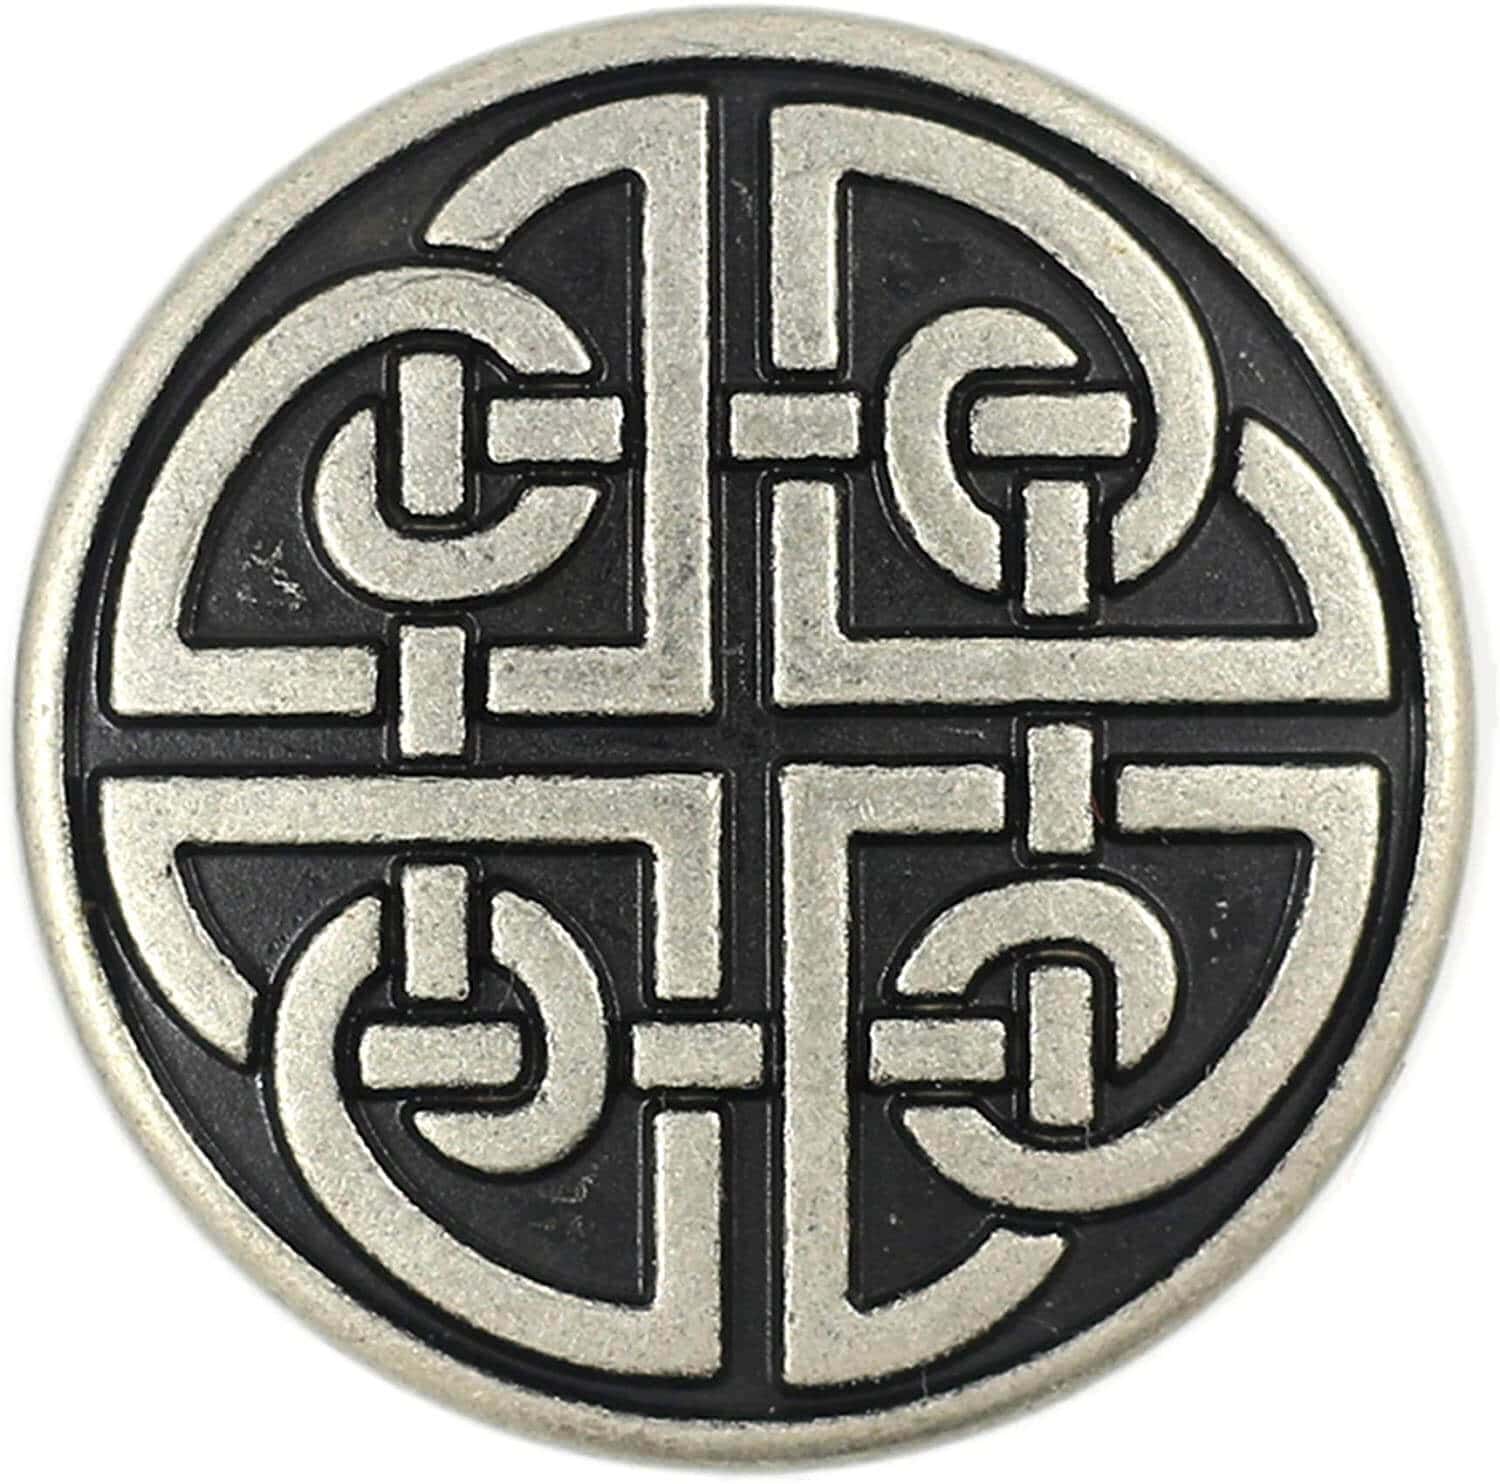 Celtic shield knot